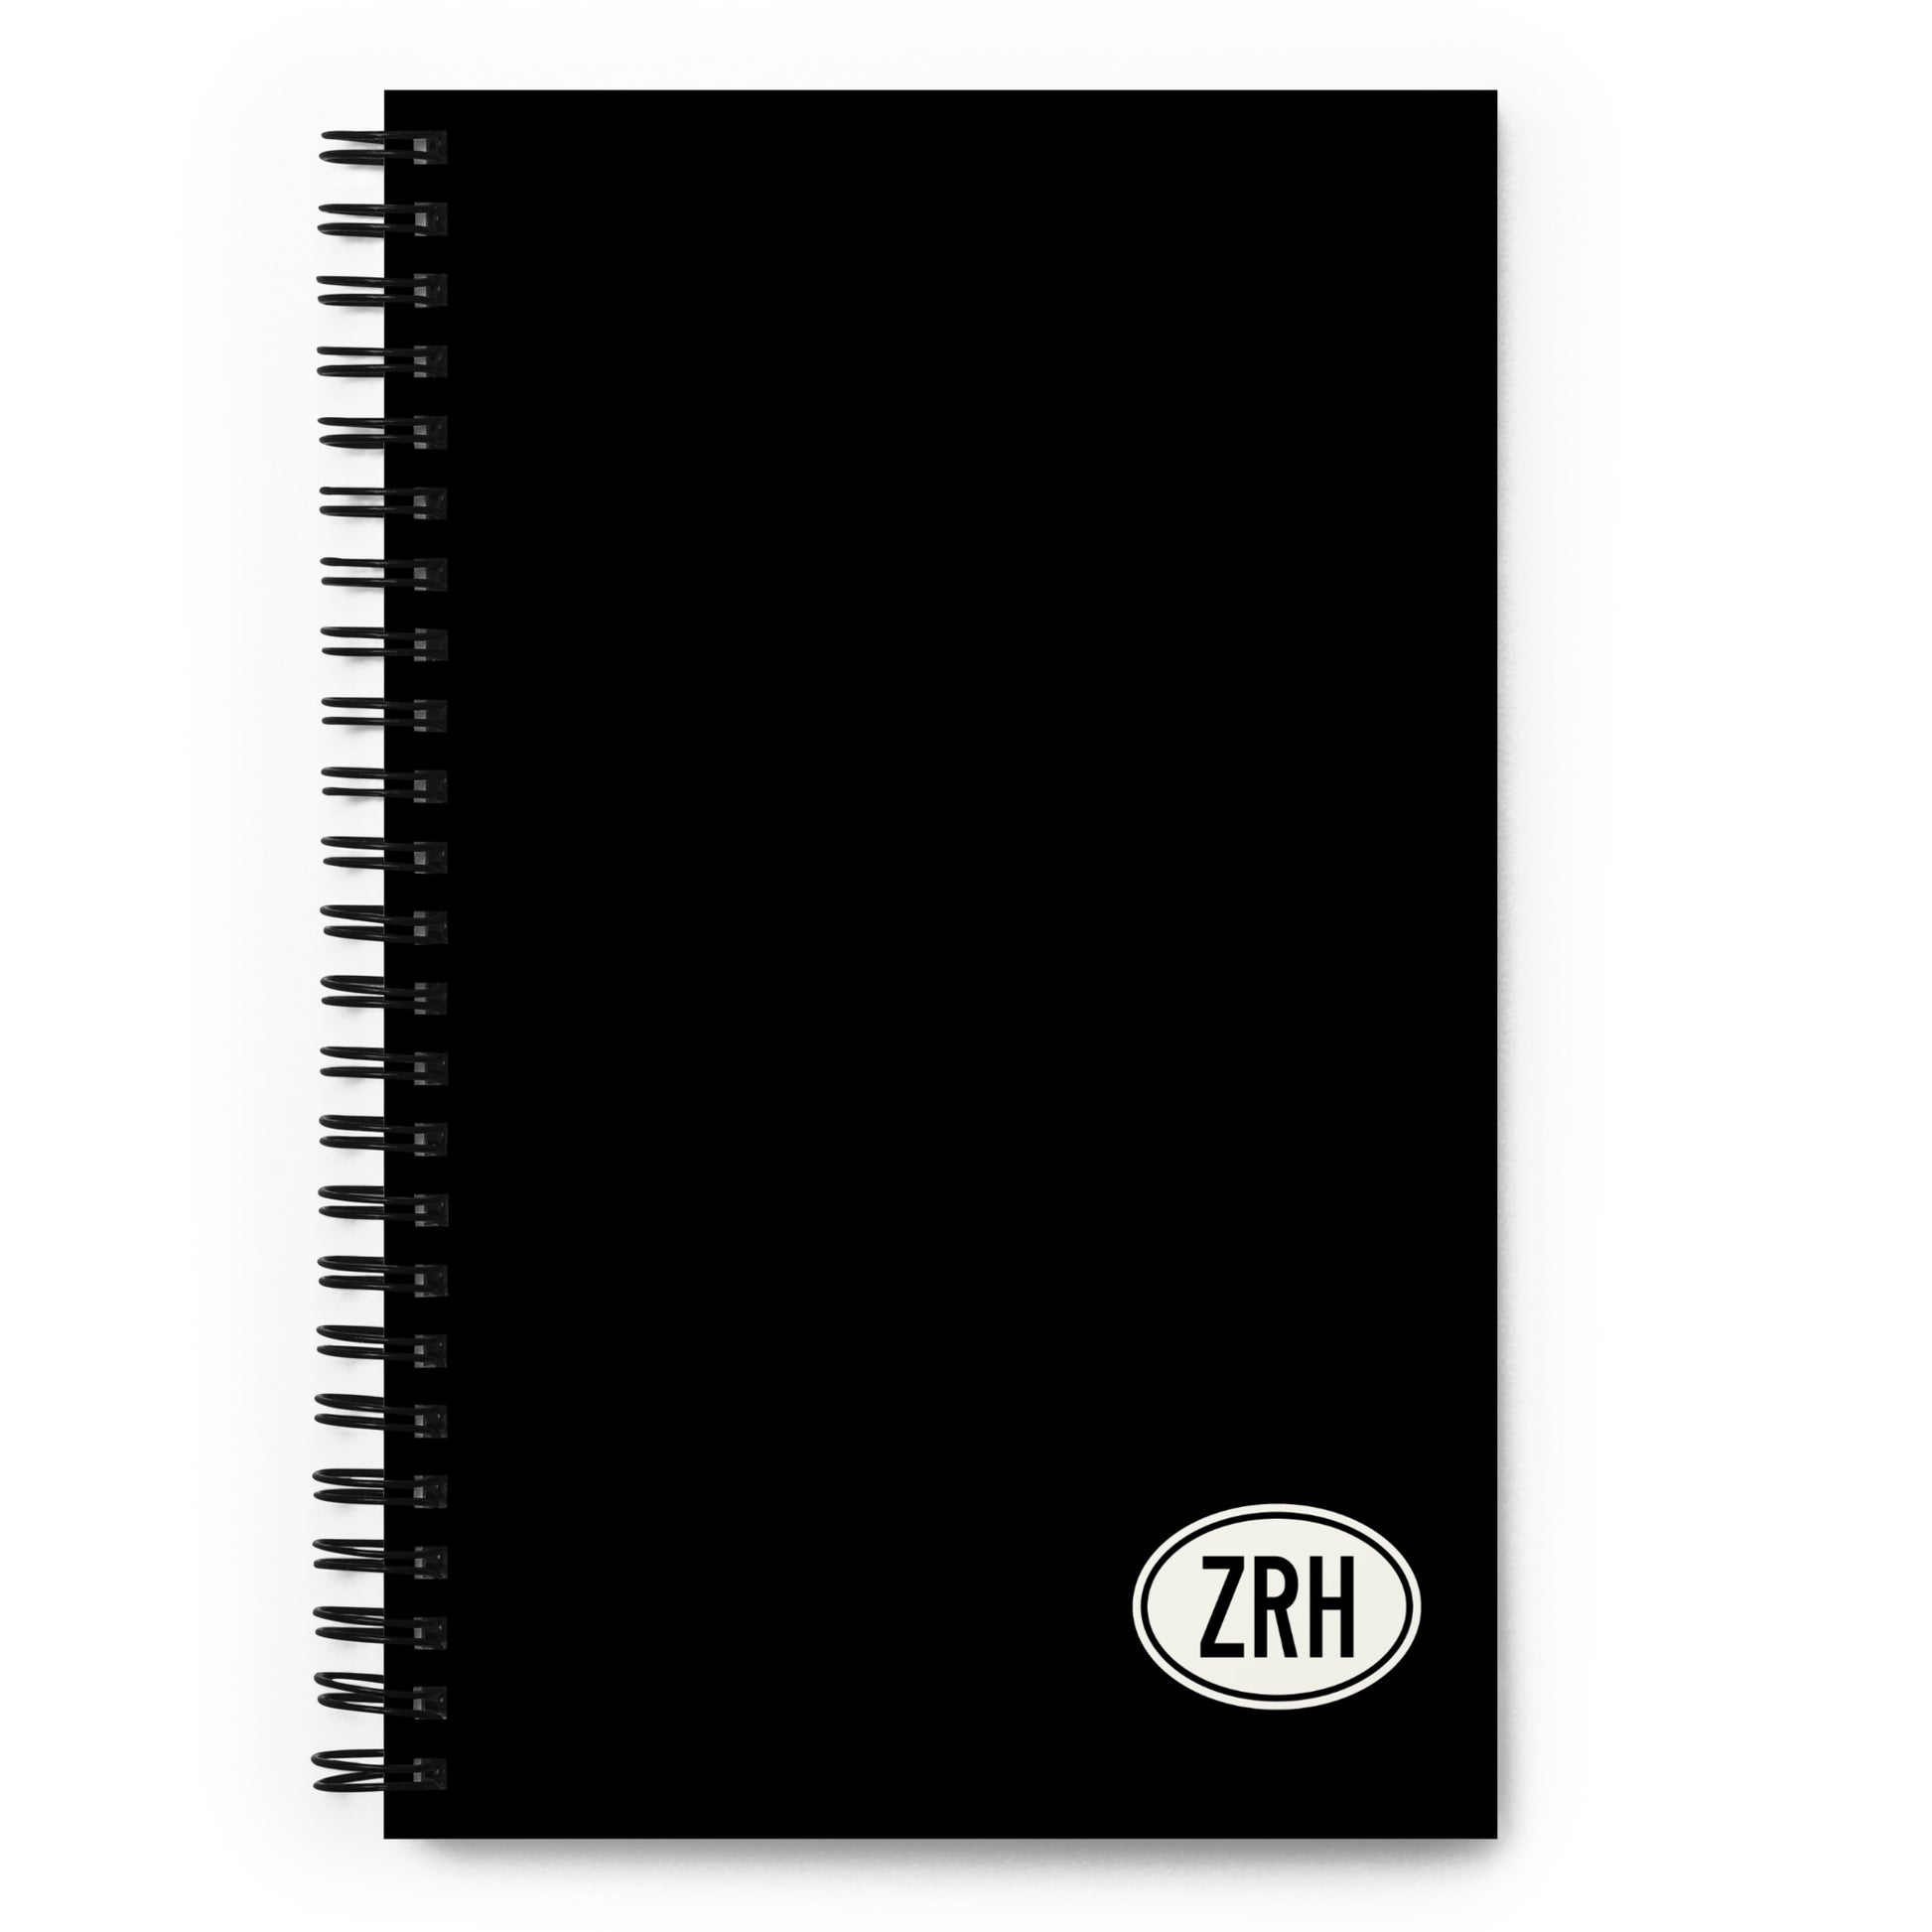 Unique Travel Gift Spiral Notebook - White Oval • ZRH Zurich • YHM Designs - Image 01